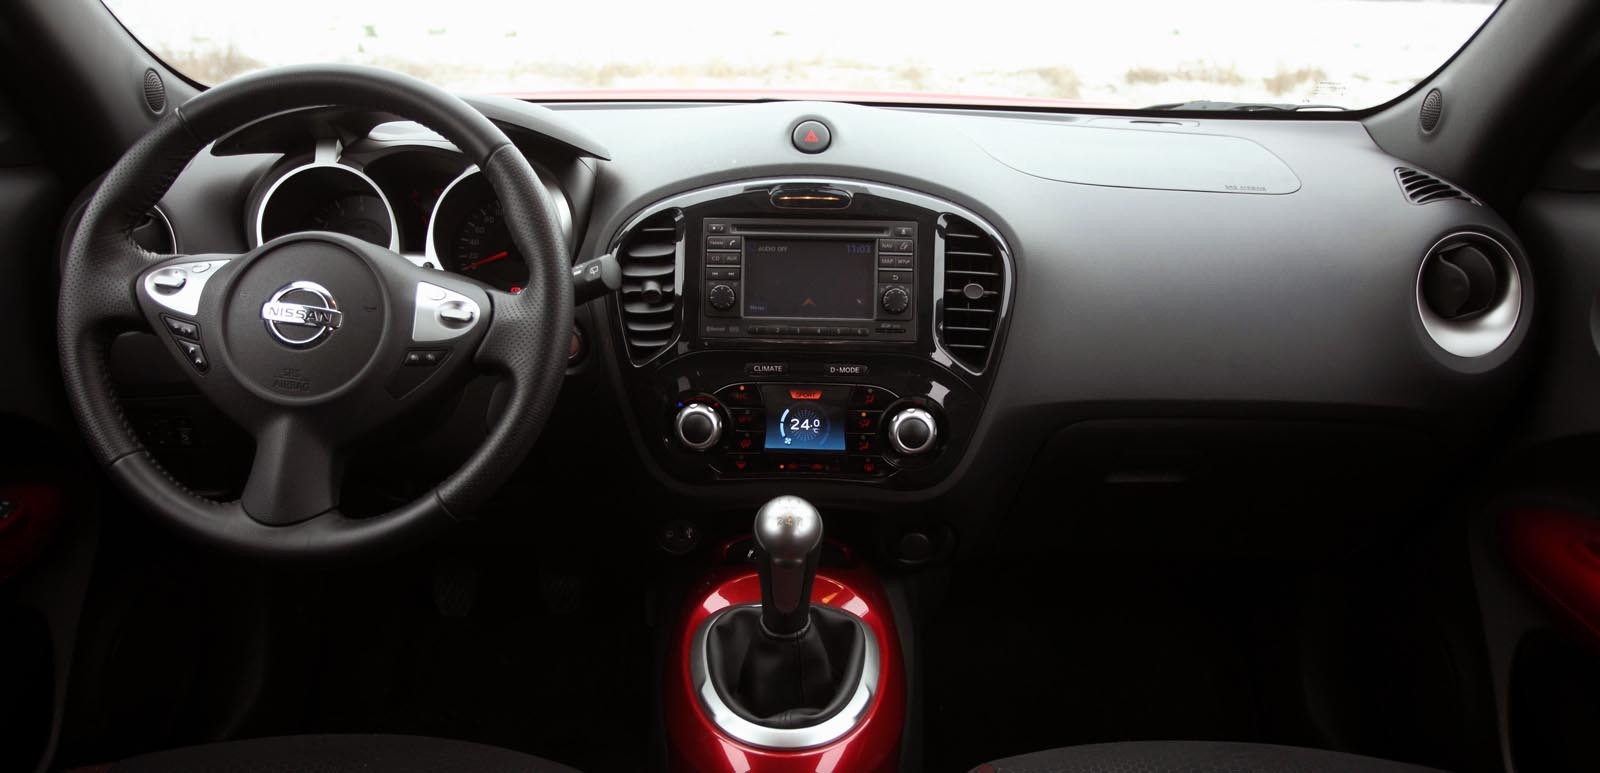 Nissan Juke ofera un interior potrivit pentru tineri. Spatiul interior este, per ansamblu, mediu